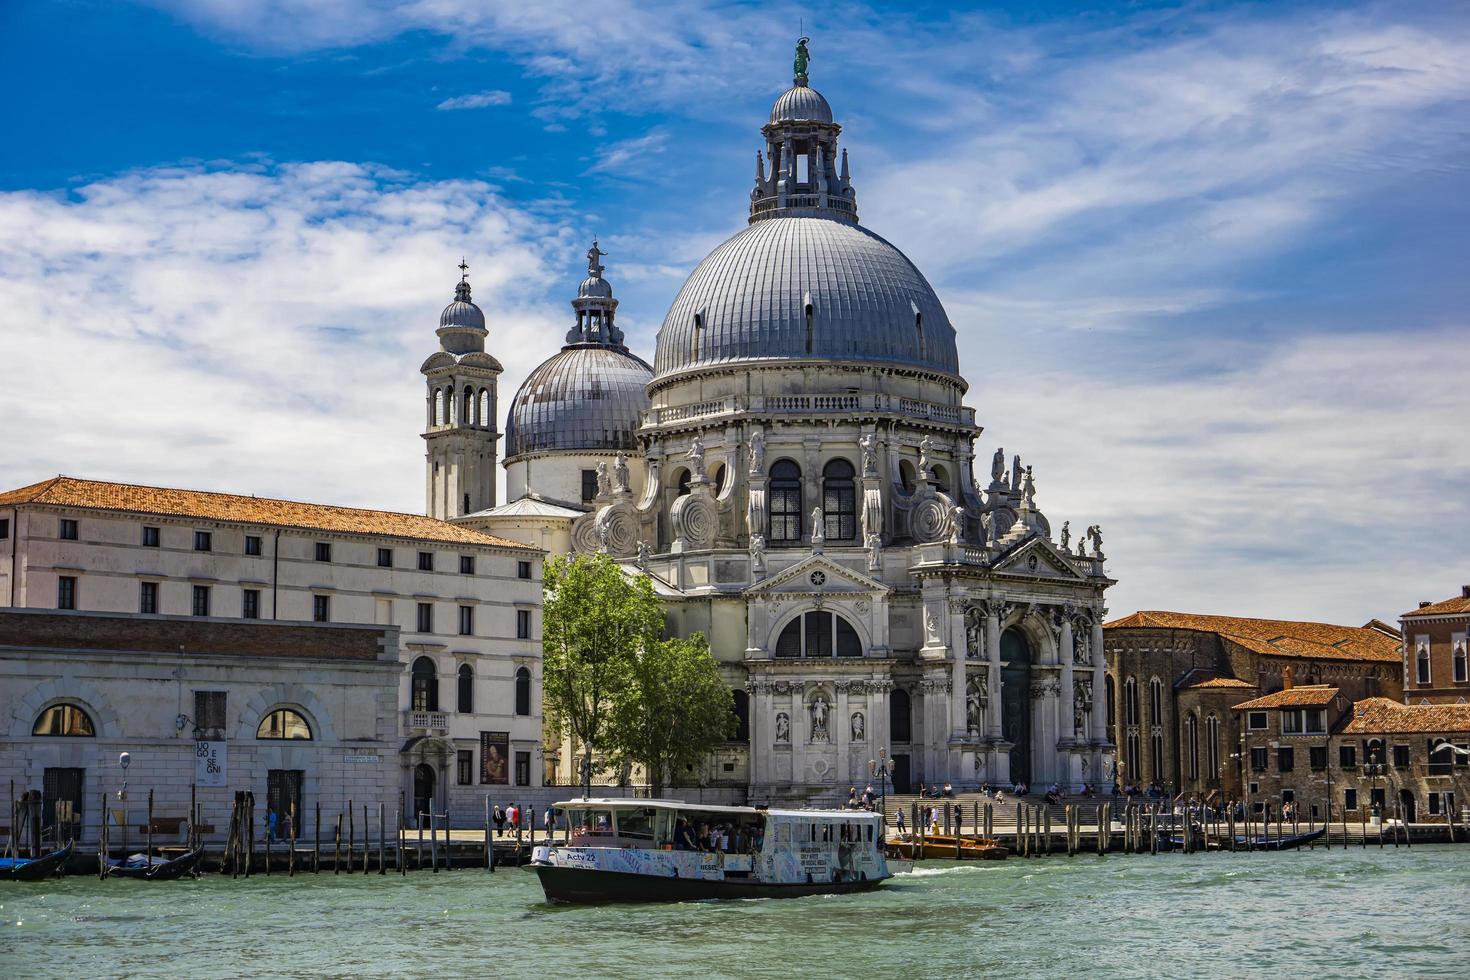 Venedig, Italien, 2019 - Blick auf die Basilica di Santa Maria della Salute in Venedig, Italien. Es ist eine römisch-katholische Kirche, die 1681 geweiht wurde. foto